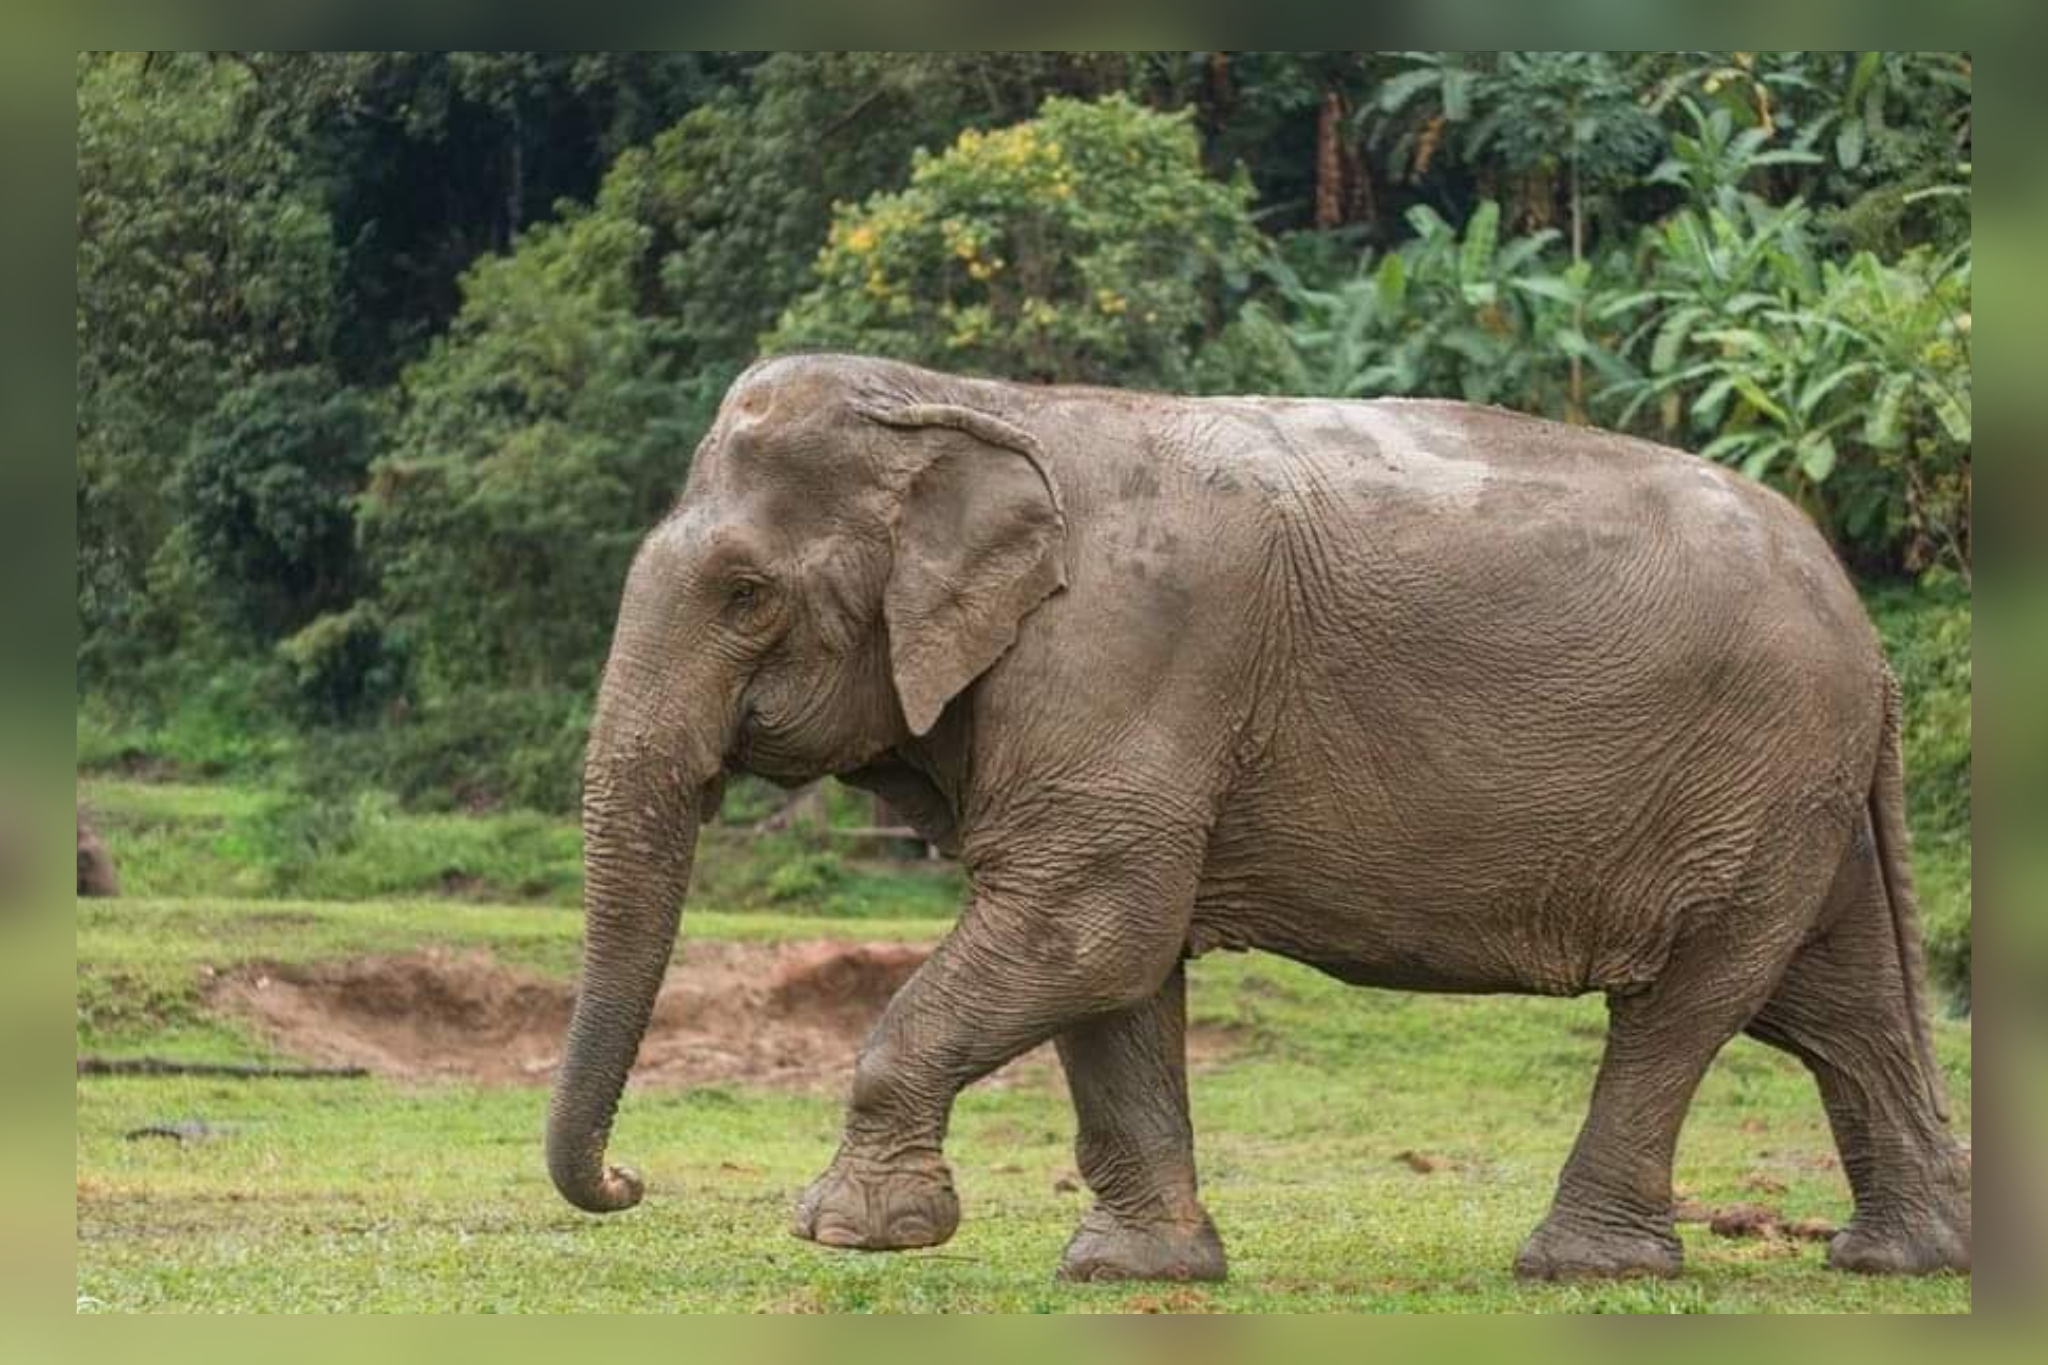 Elephant attacked